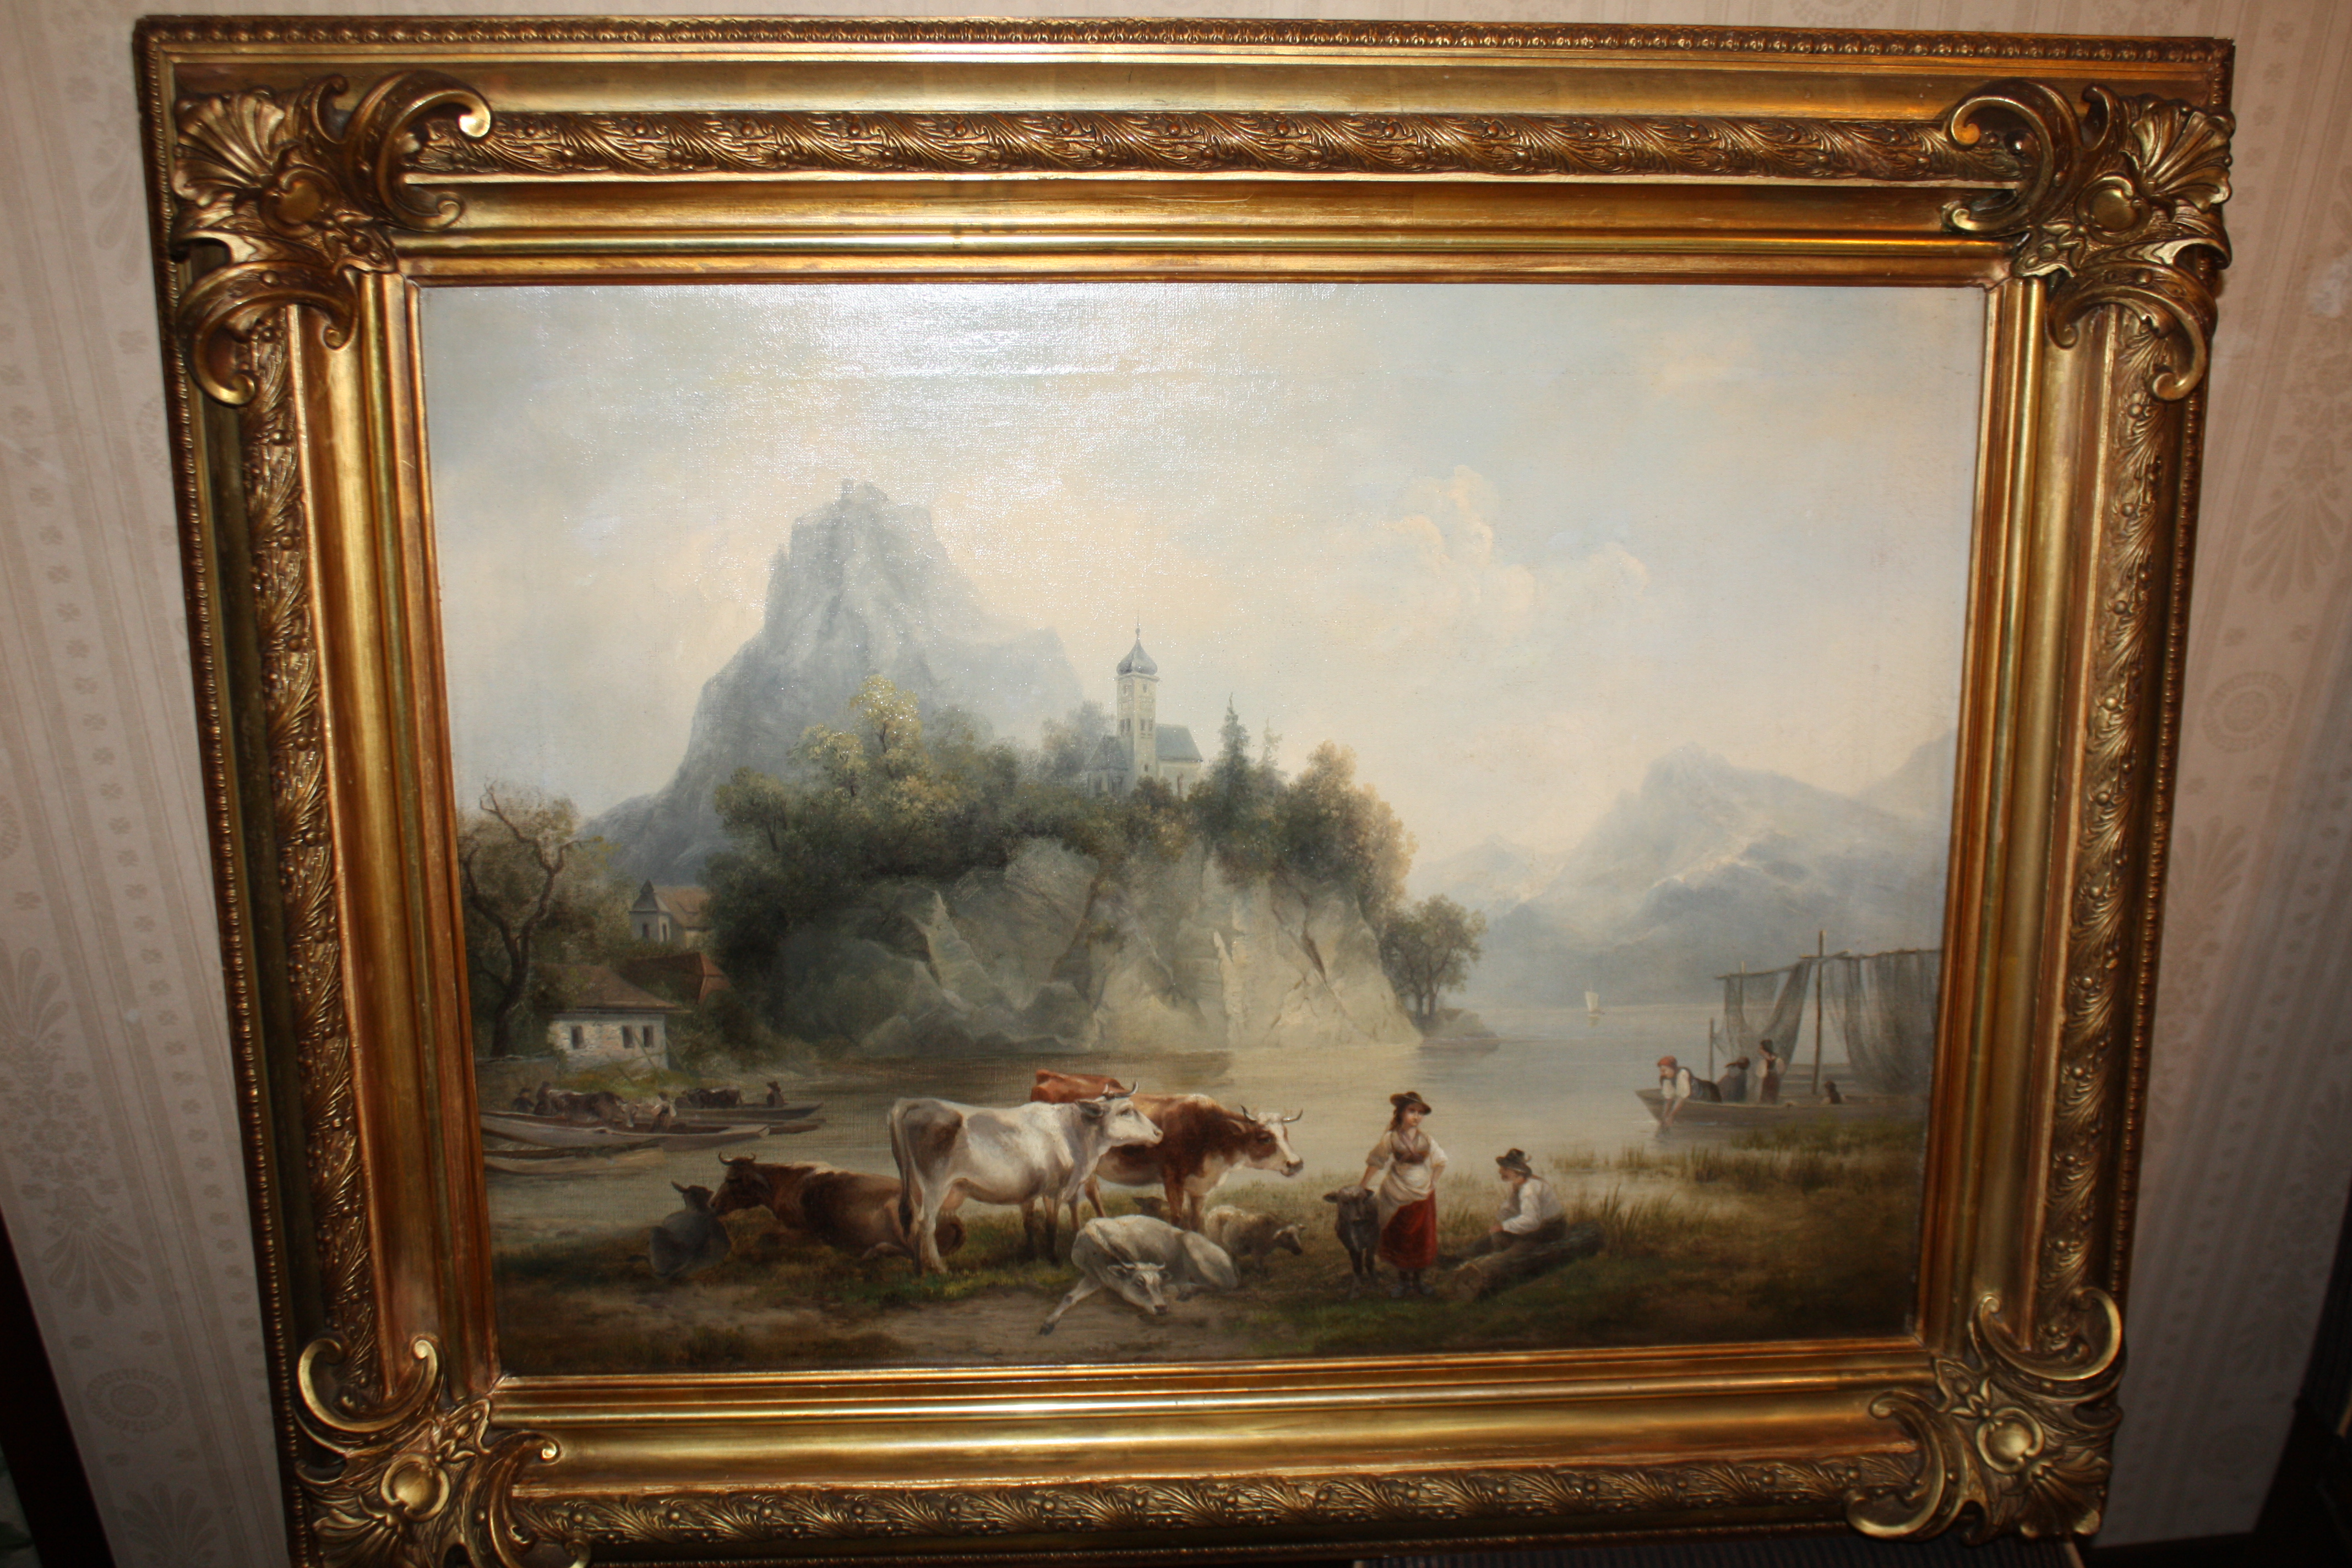 A 19th century romantic landscape oil painting